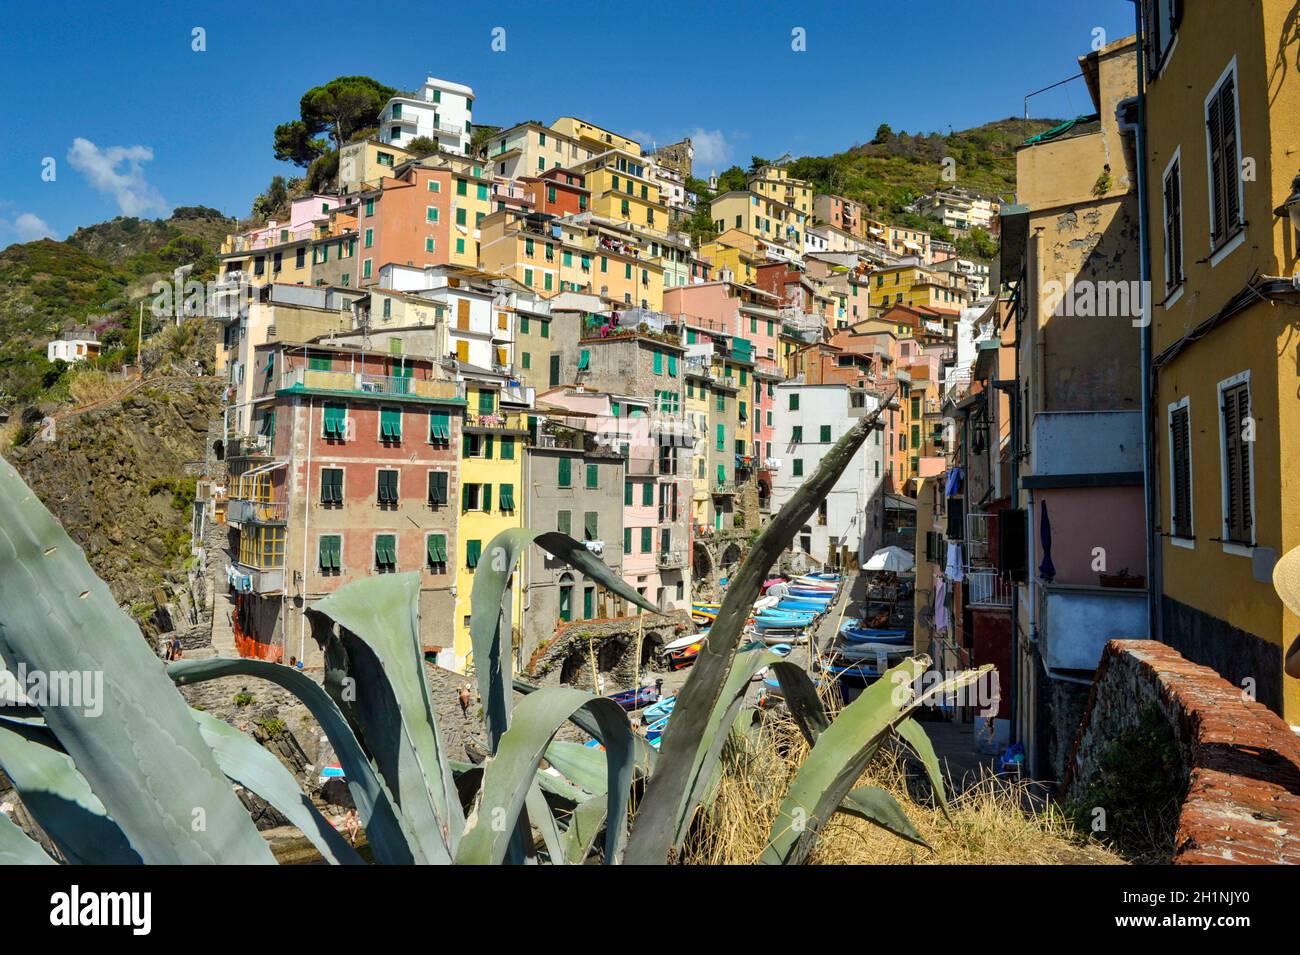 Riomaggiore, Italy - September 6, 2011: Riomaggiore - one of the cities of Cinque Terre in Italy Stock Photo